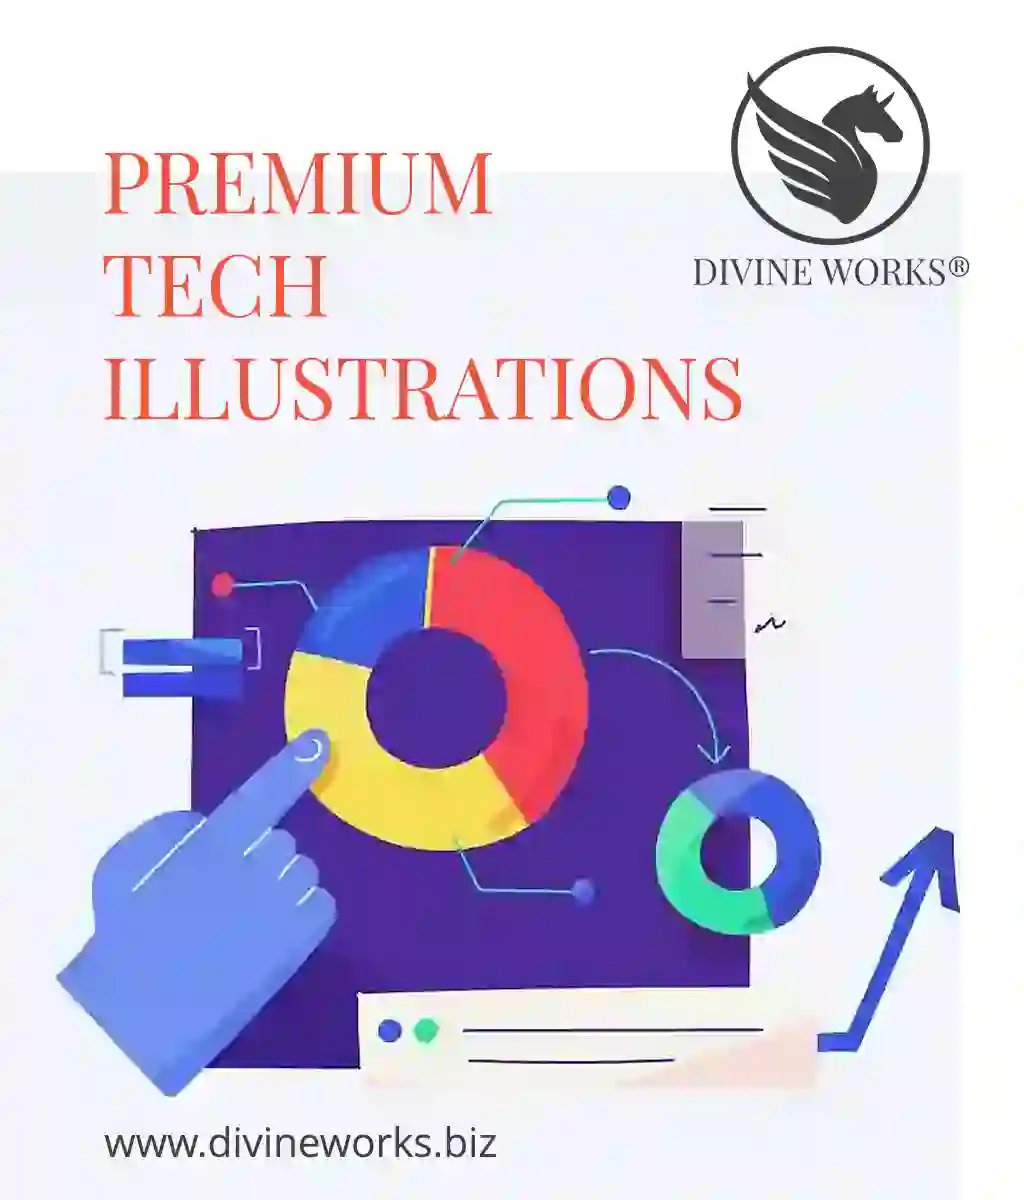 Premium Tech illustrations